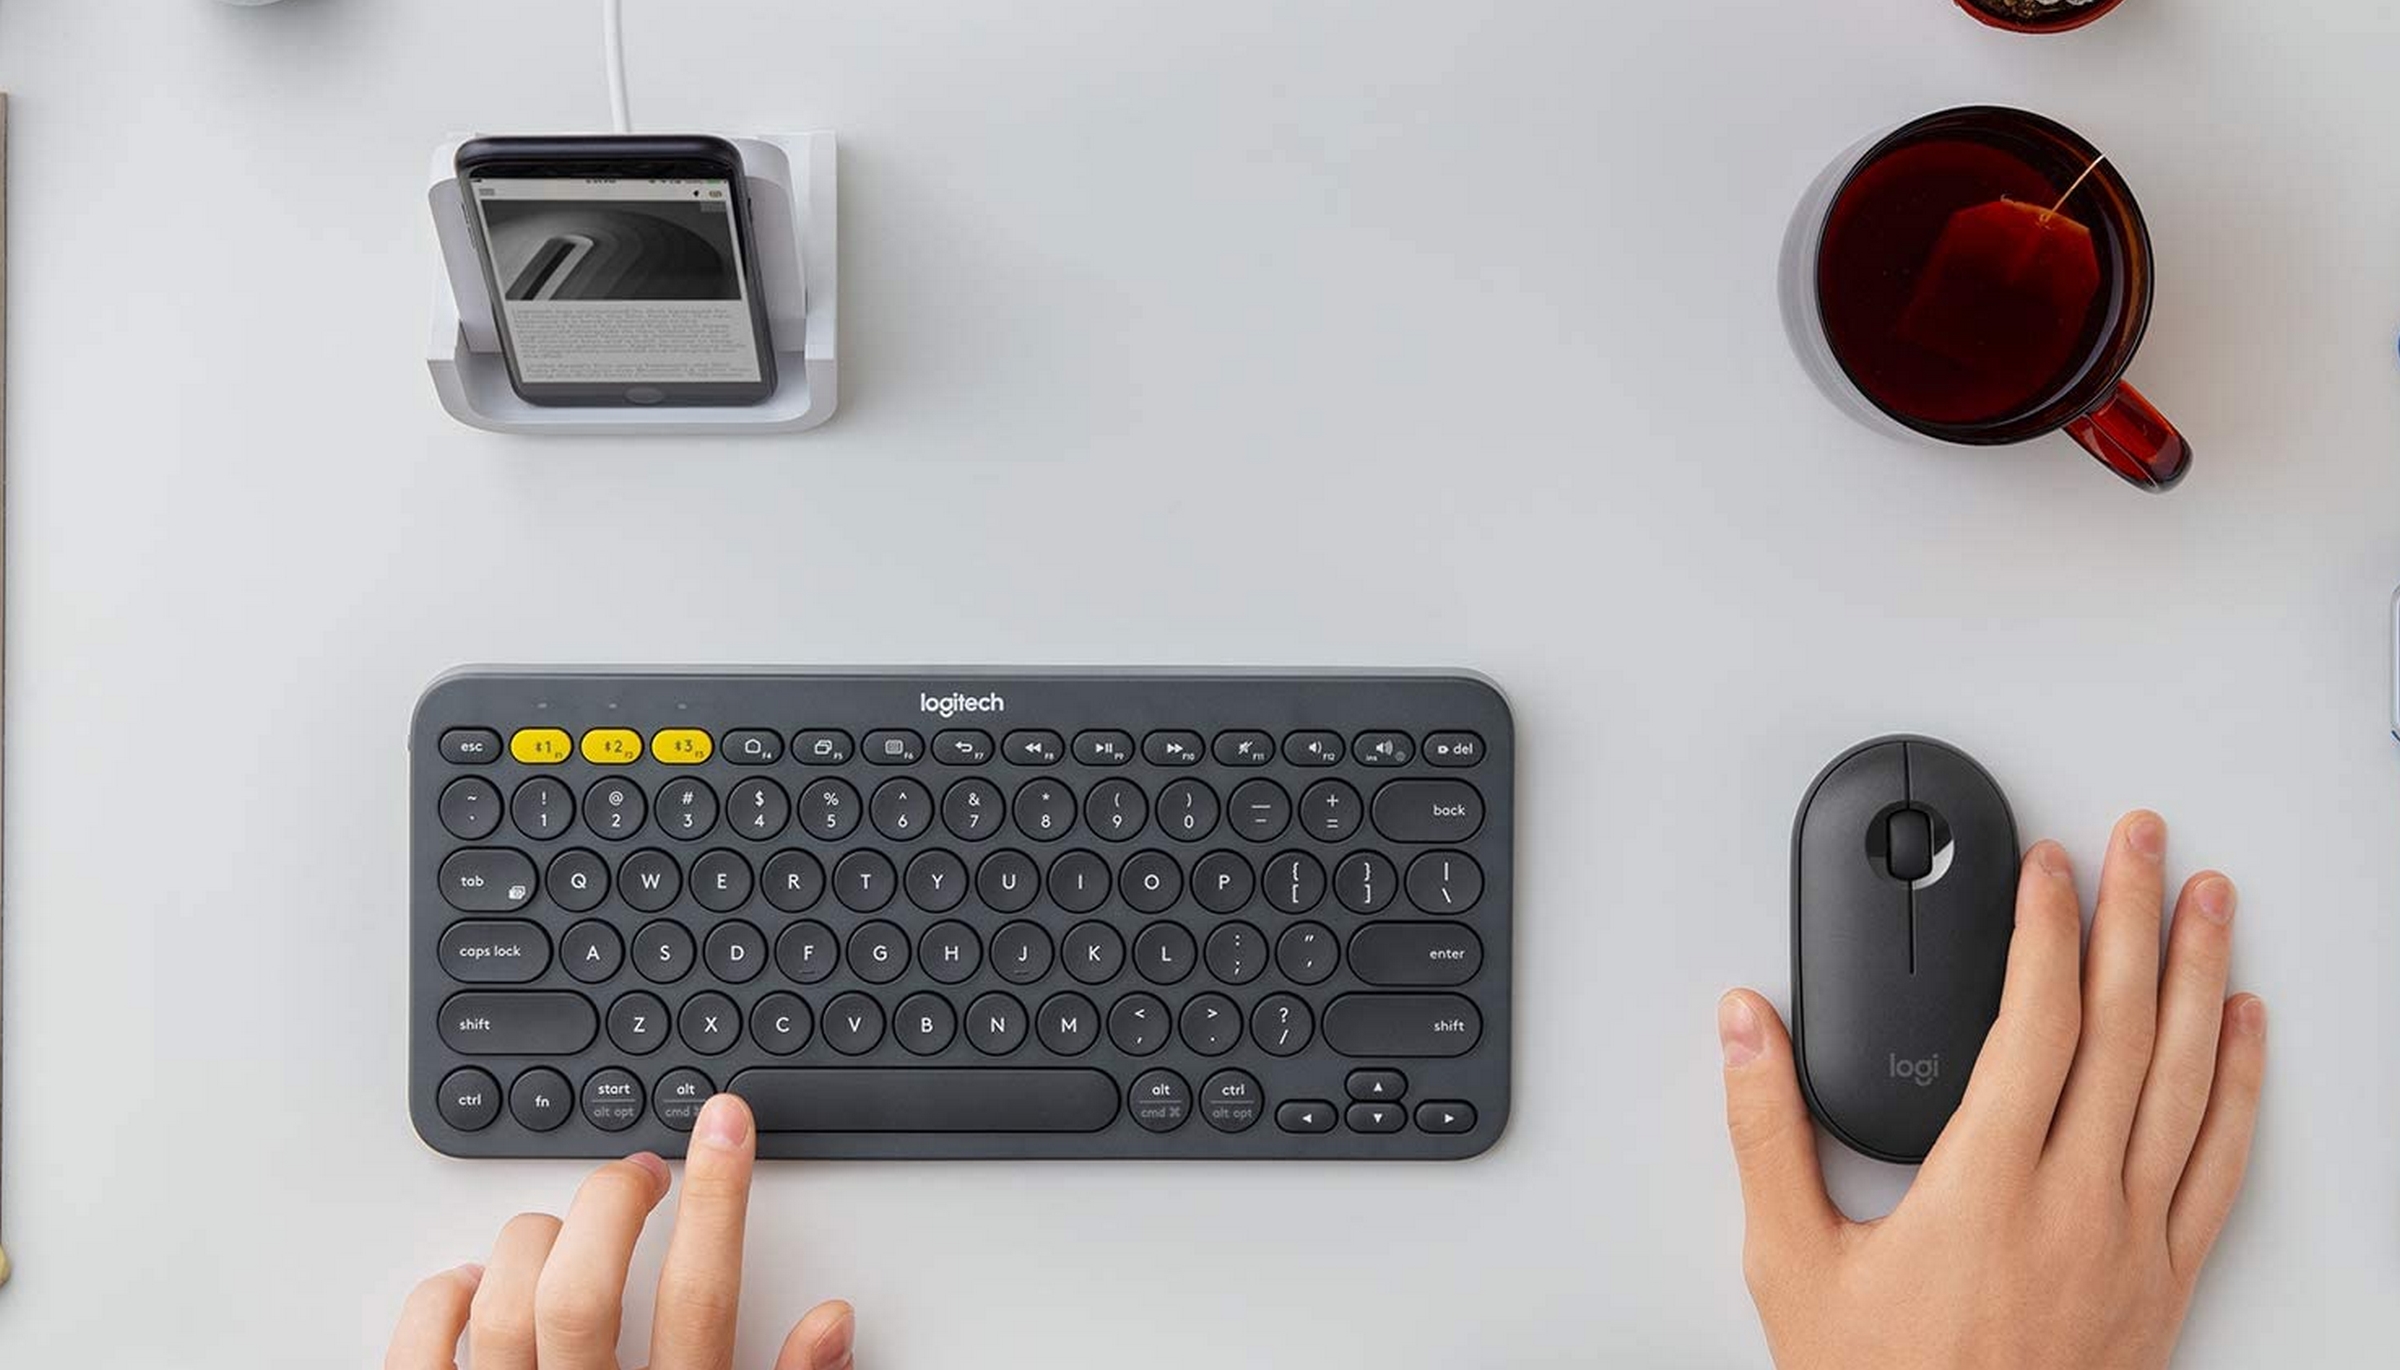 Logitech K380, el teclado inalámbrico multidispositivo ideal usar con la tele, en oferta | Tecnología - ComputerHoy.com